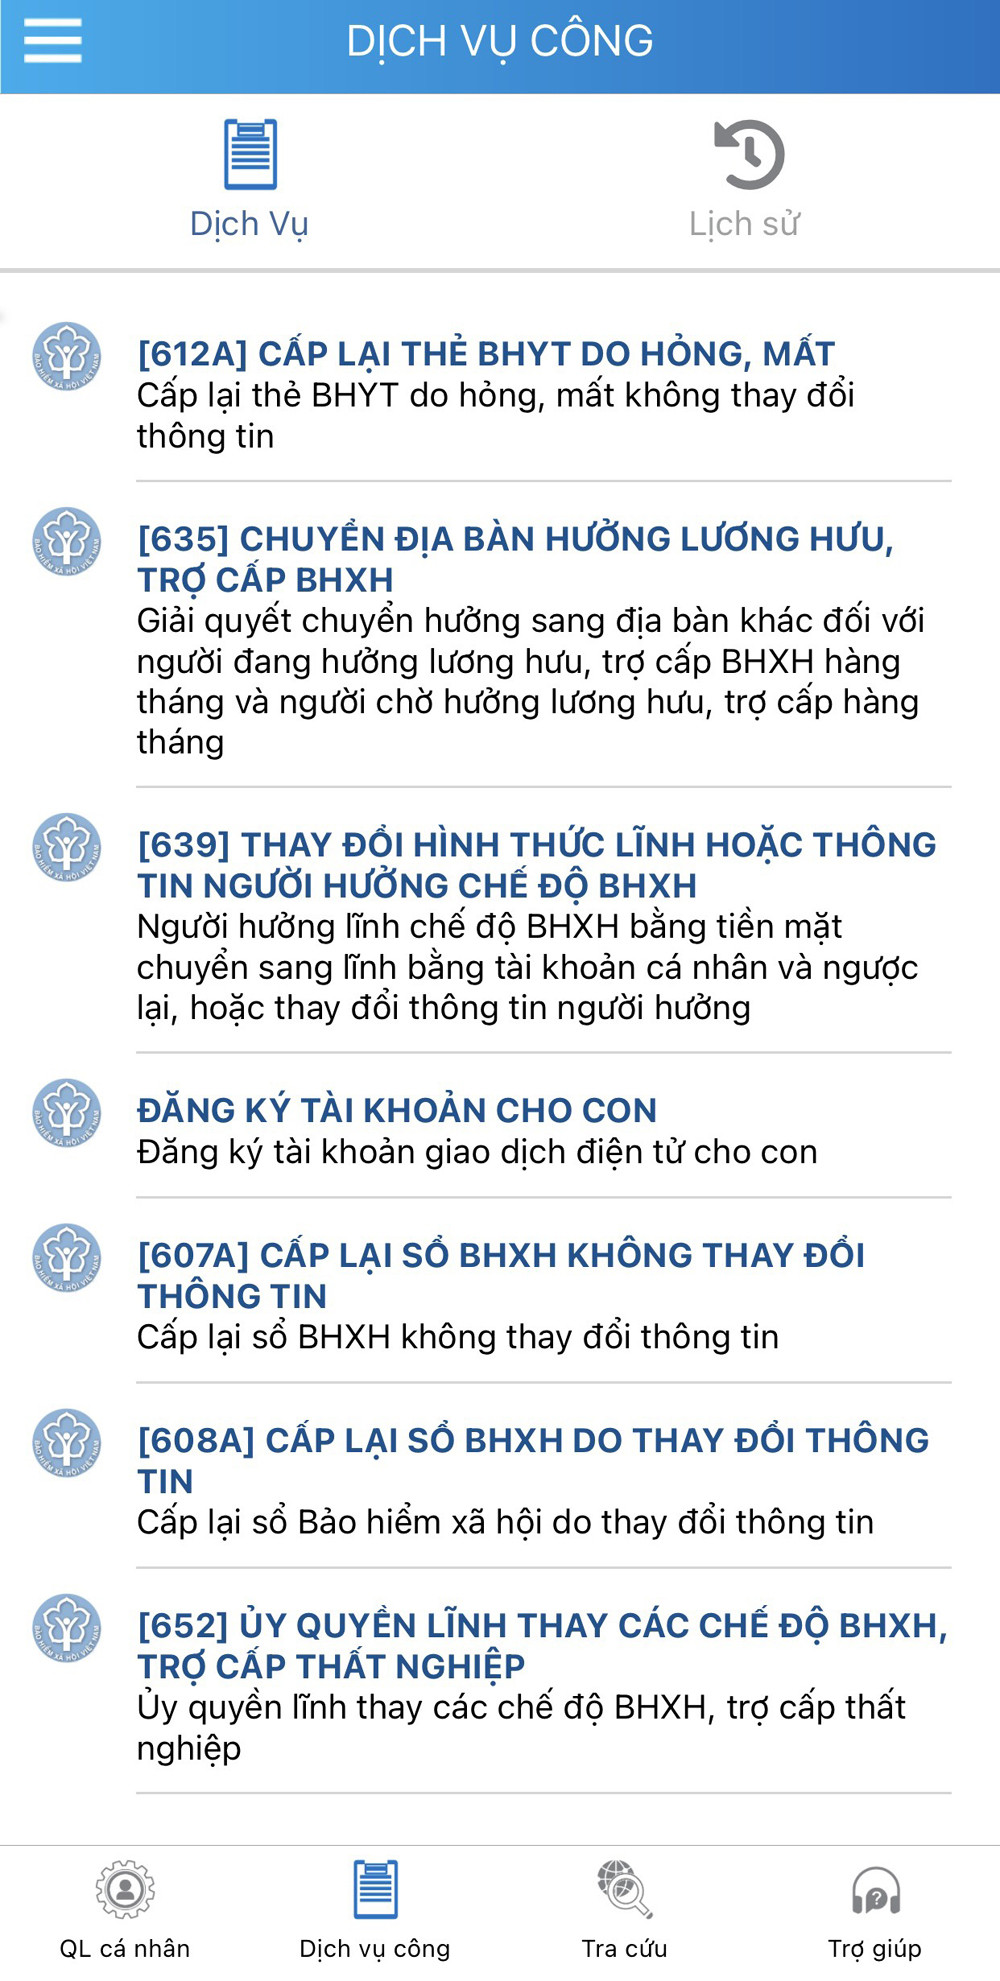 BHXH Việt Nam xếp thứ 3 trong các Bộ, ngành có cung cấp dịch vụ công  - Ảnh 2.